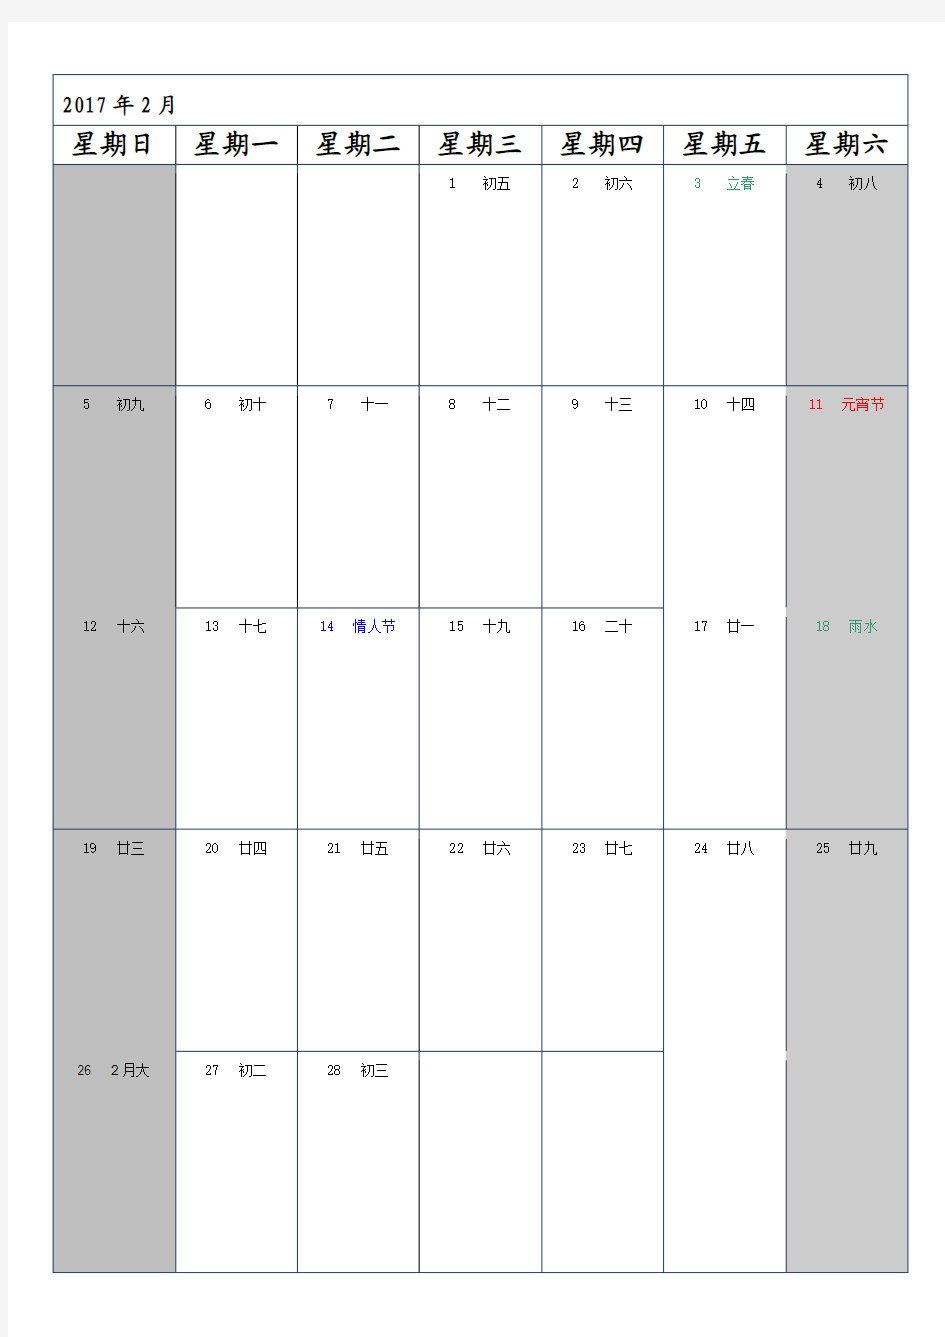 2017年日历记事本(一月一张)含阴历、节日